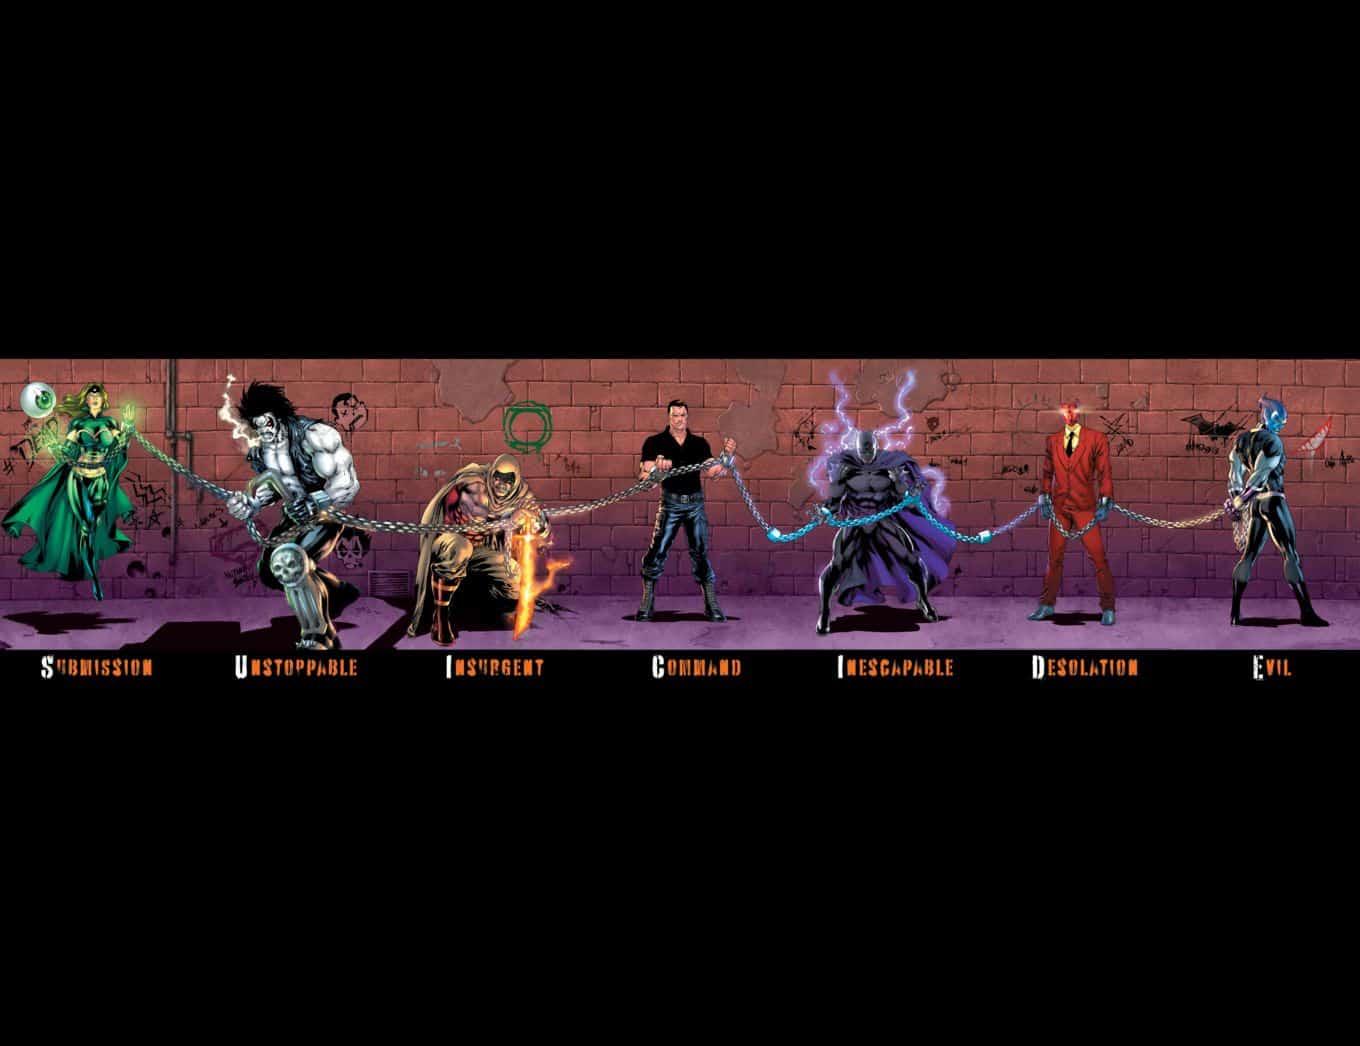 Suicide-Squad-vs-Justice-League-teaser-banner-evil-1.jpg